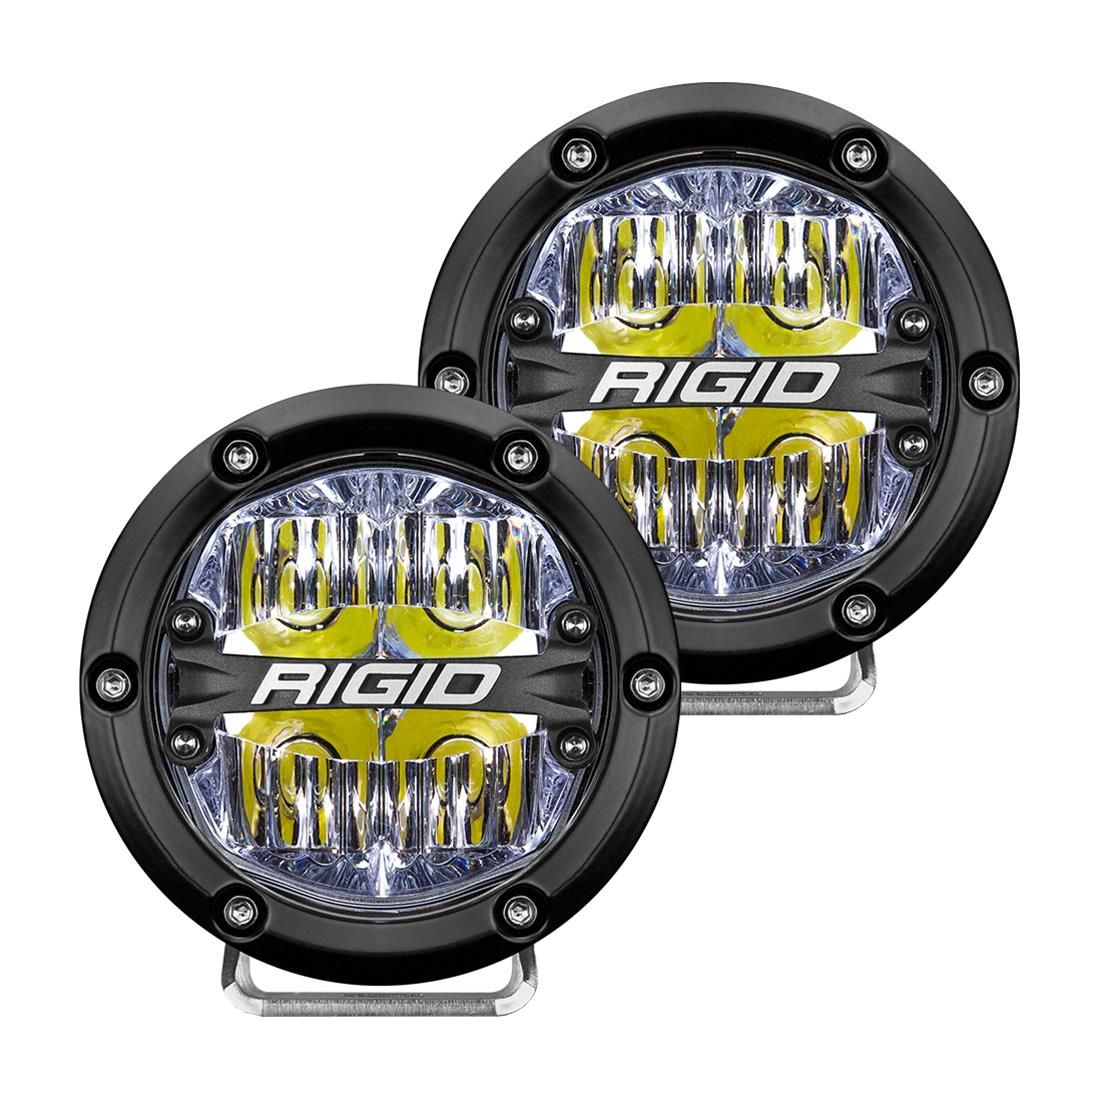 Rigid Industries 360 Series LED Lights 36117